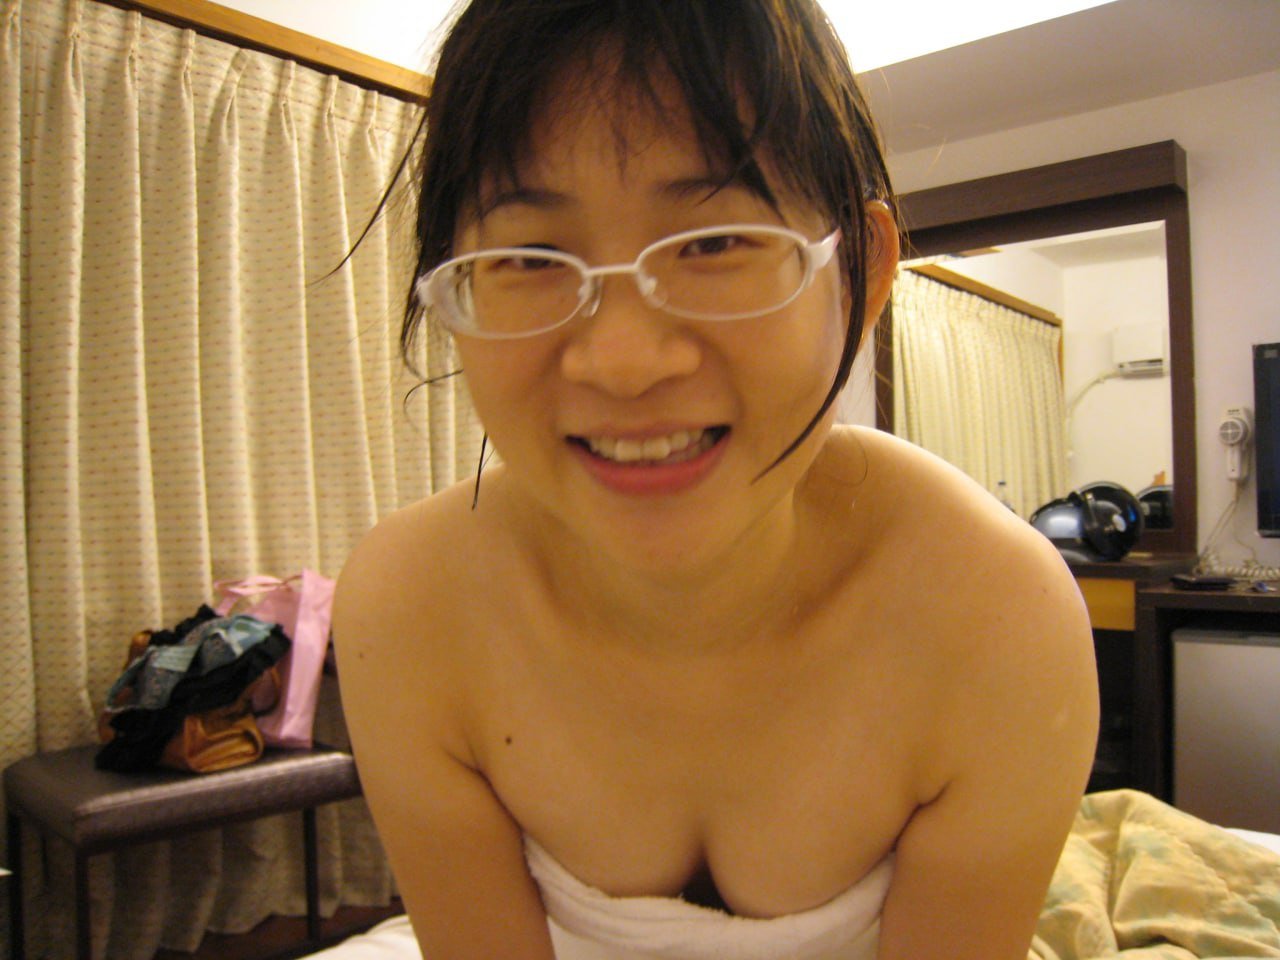 Ugly Asian nude - Porn Videos & Photos - EroMe